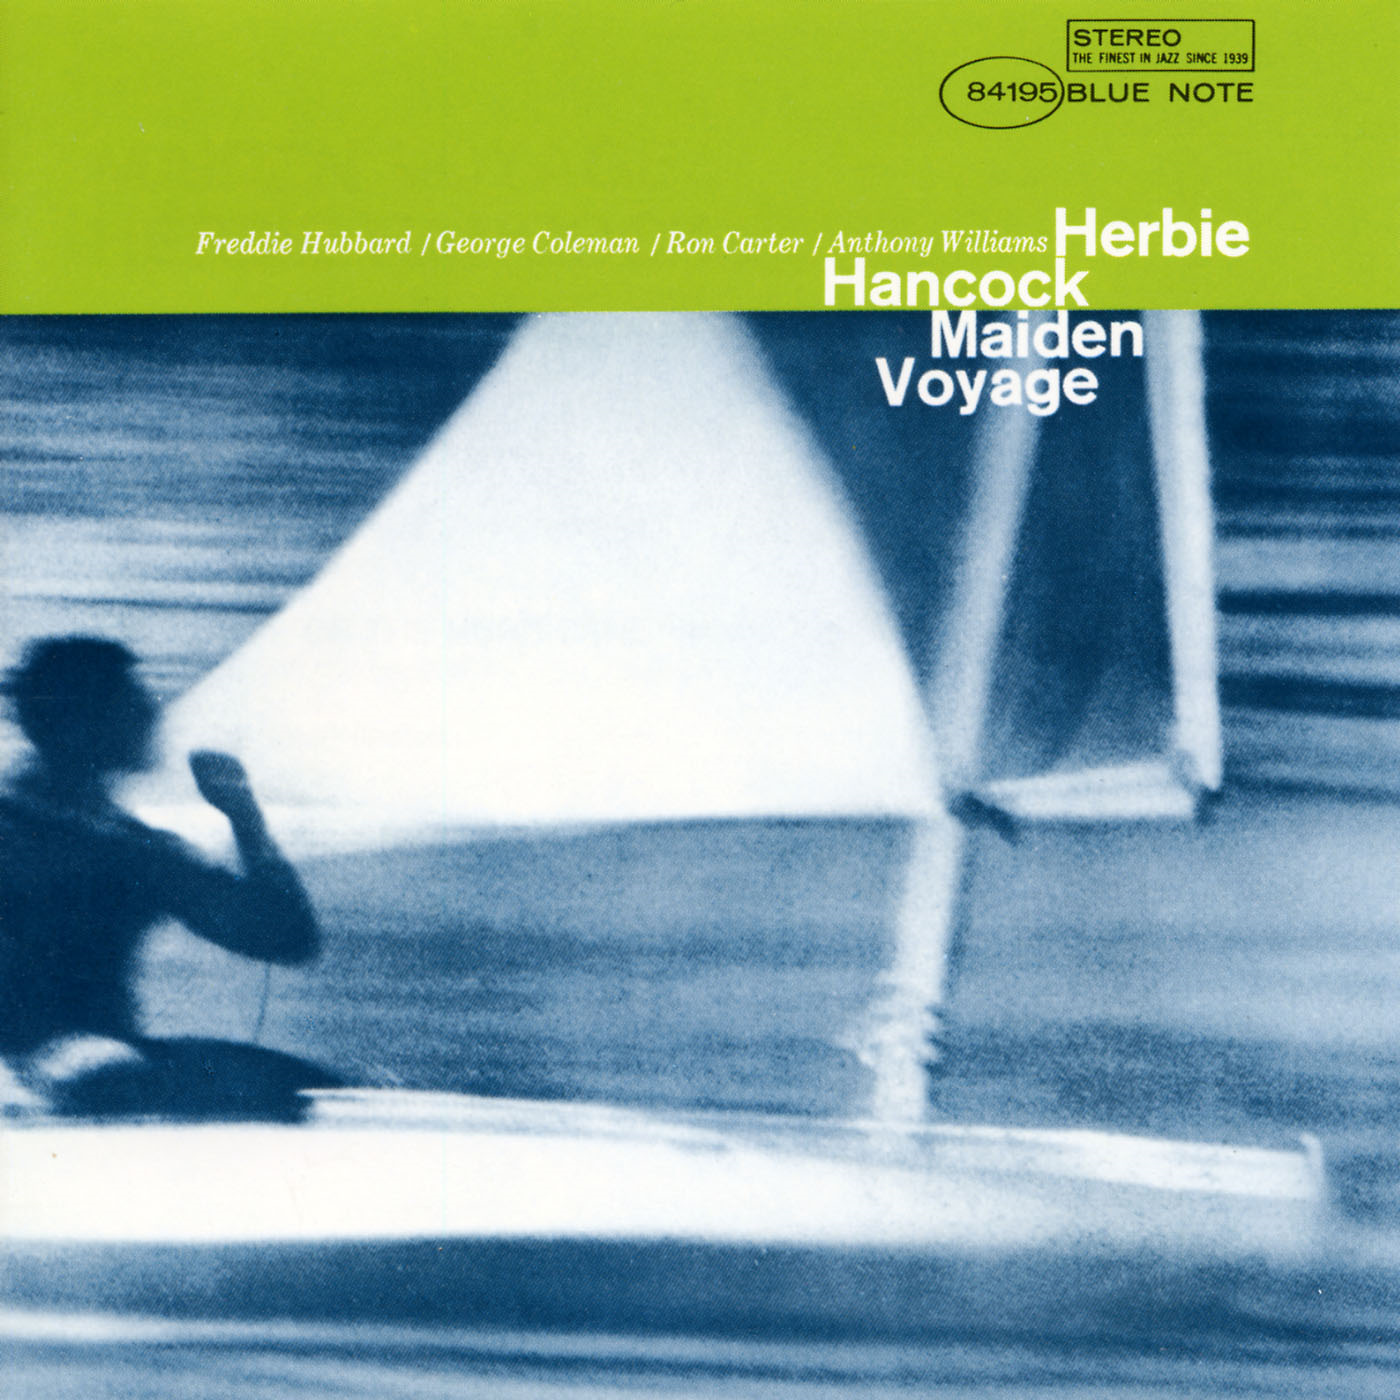 Herbie Hancock-Maiden Voyage-24-192-WEB-FLAC-REMASTERED-2012-OBZEN